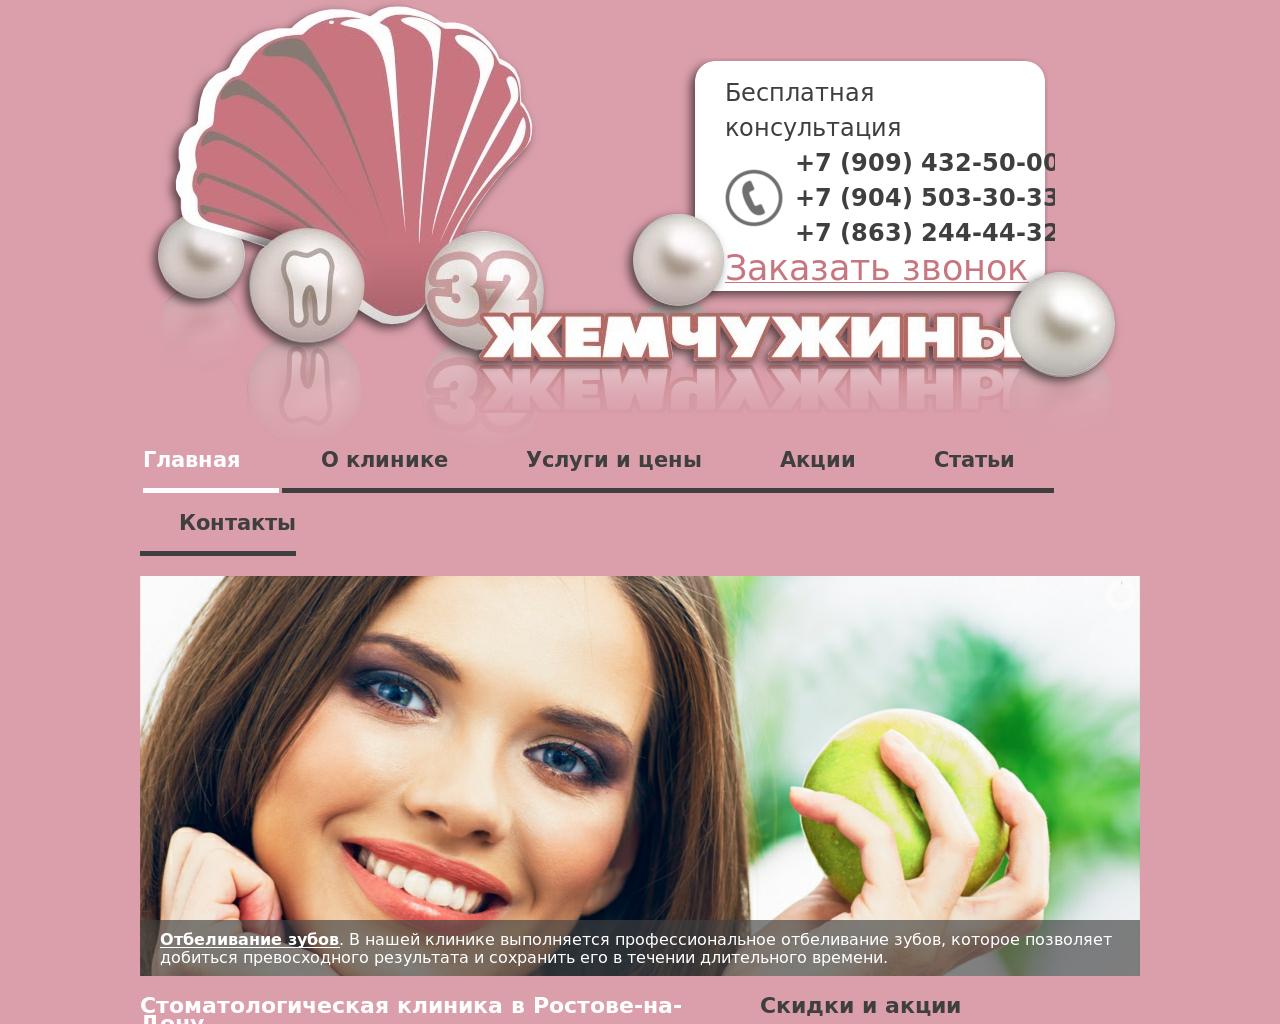 Изображение сайта 32stom.ru в разрешении 1280x1024